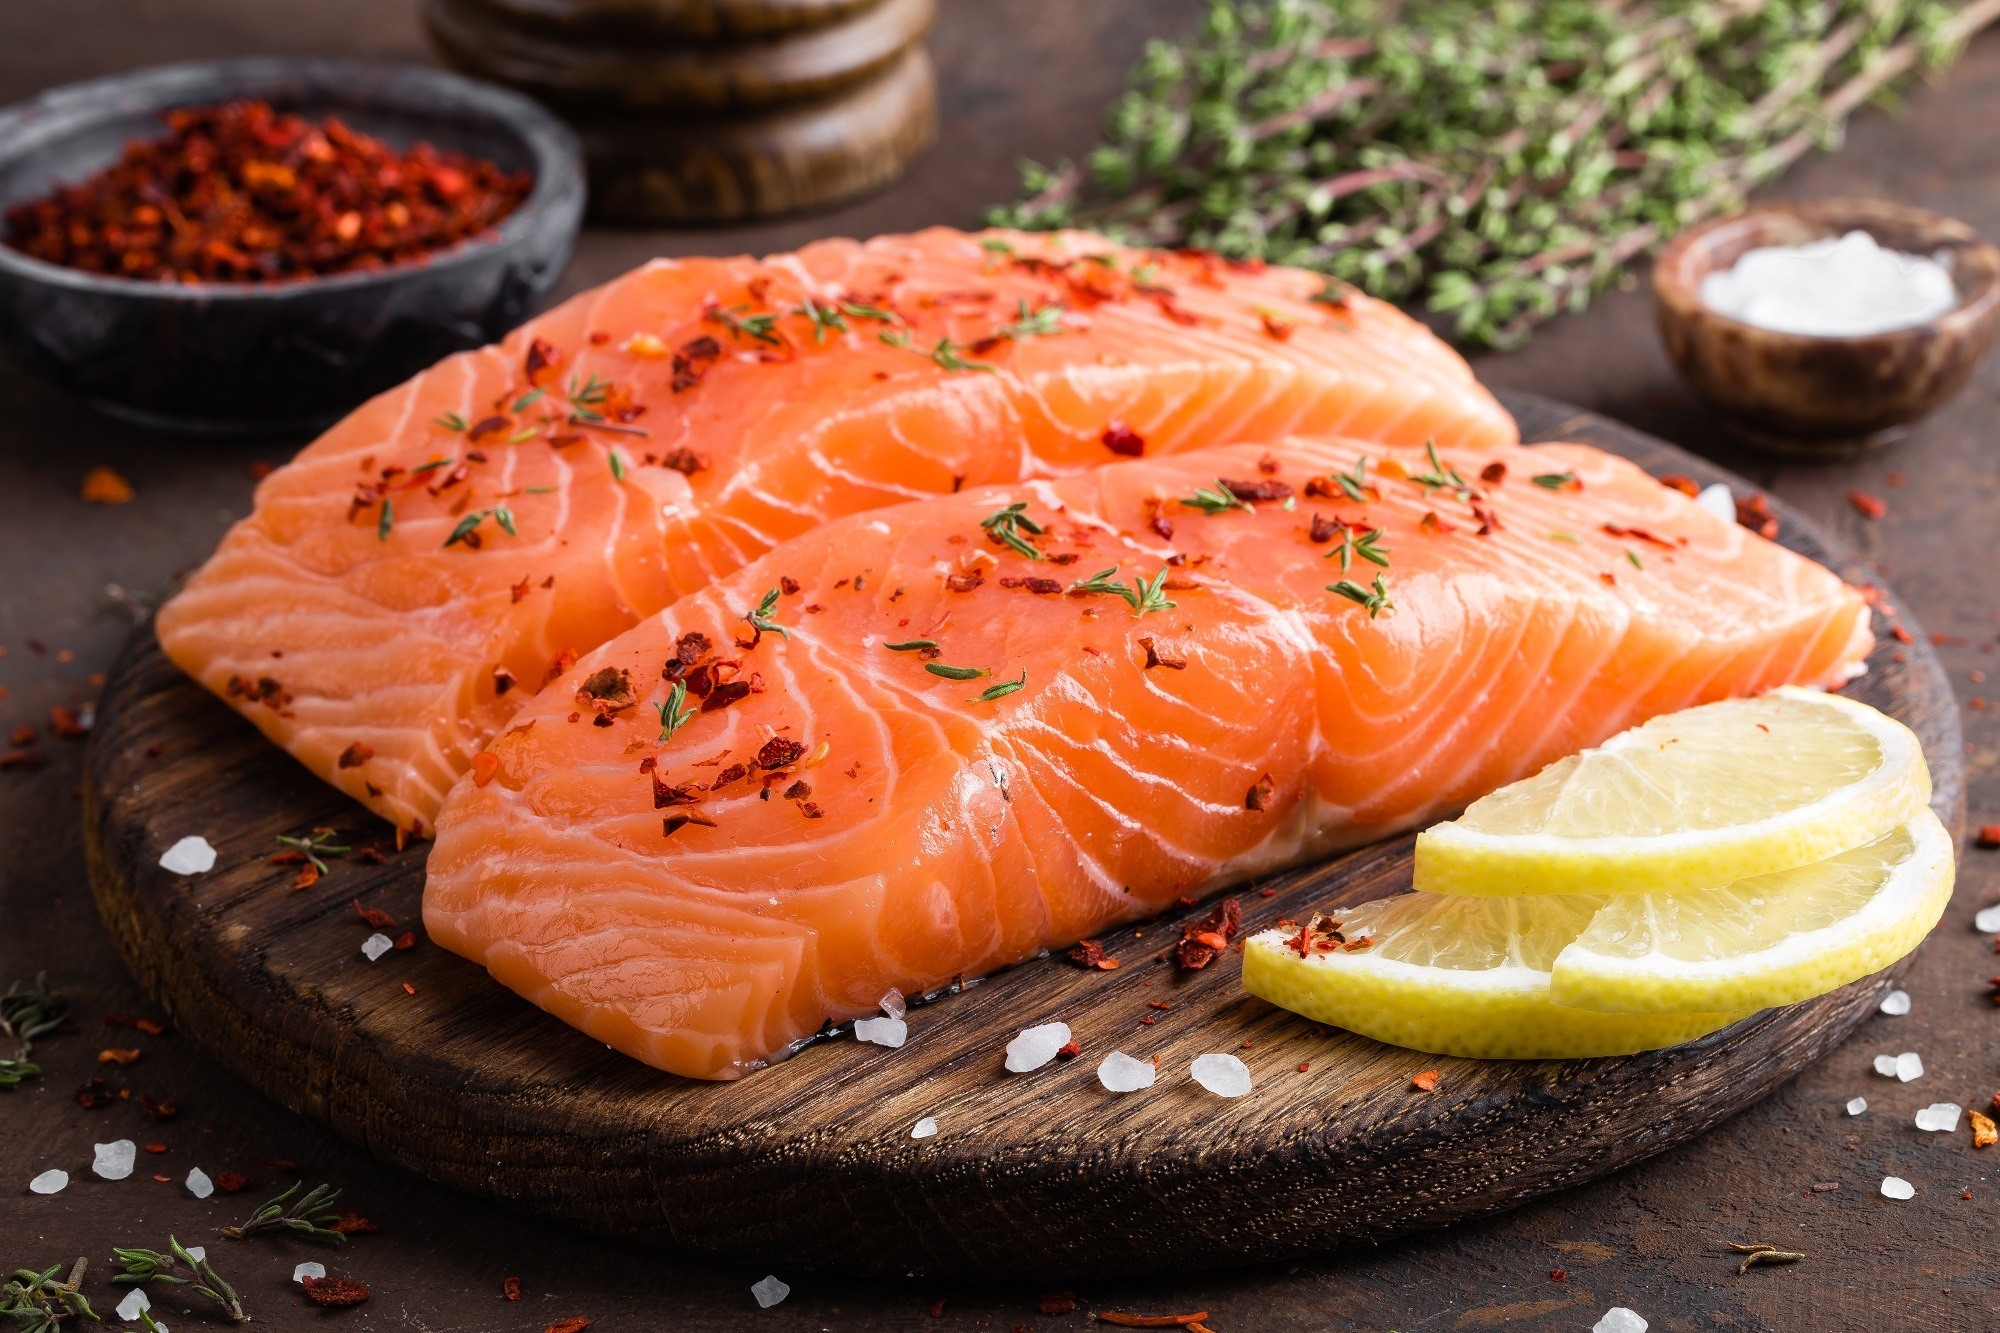 Tips Belanja dan Cara Masak Salmon Agar Nutrisinya Terjaga